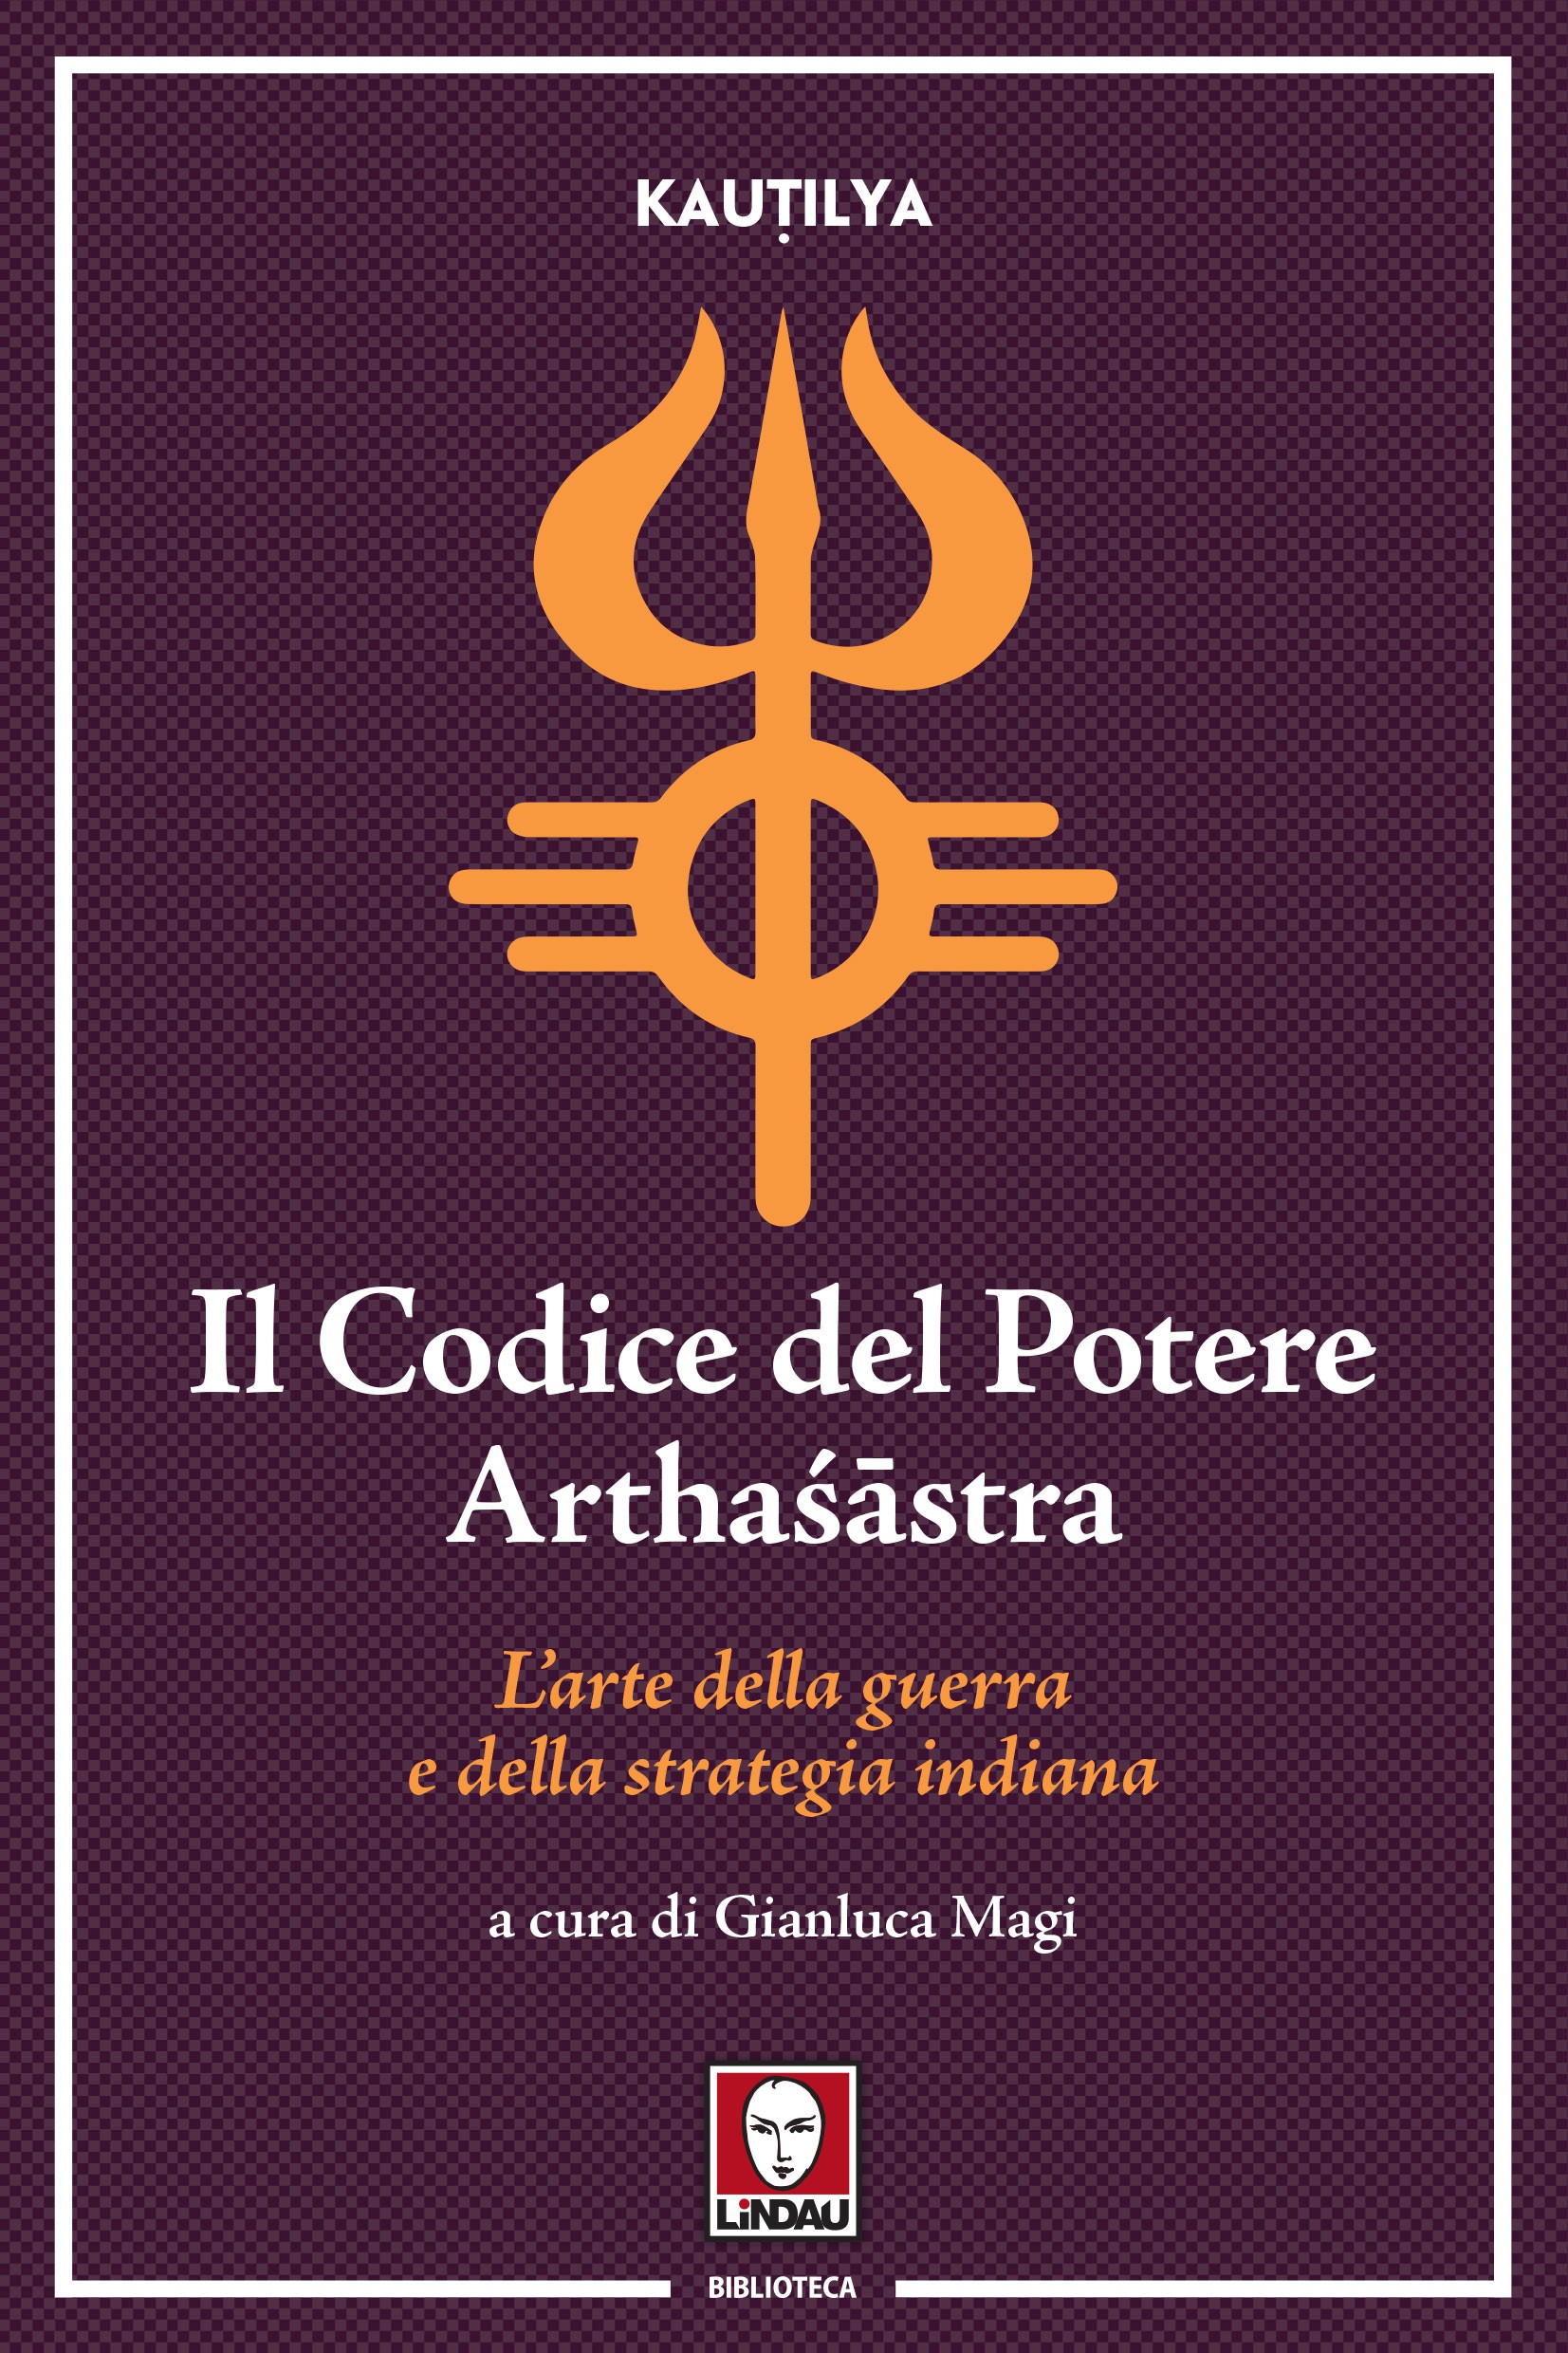 Il Codice del Potere (Arthaśāstra) - Librerie.coop